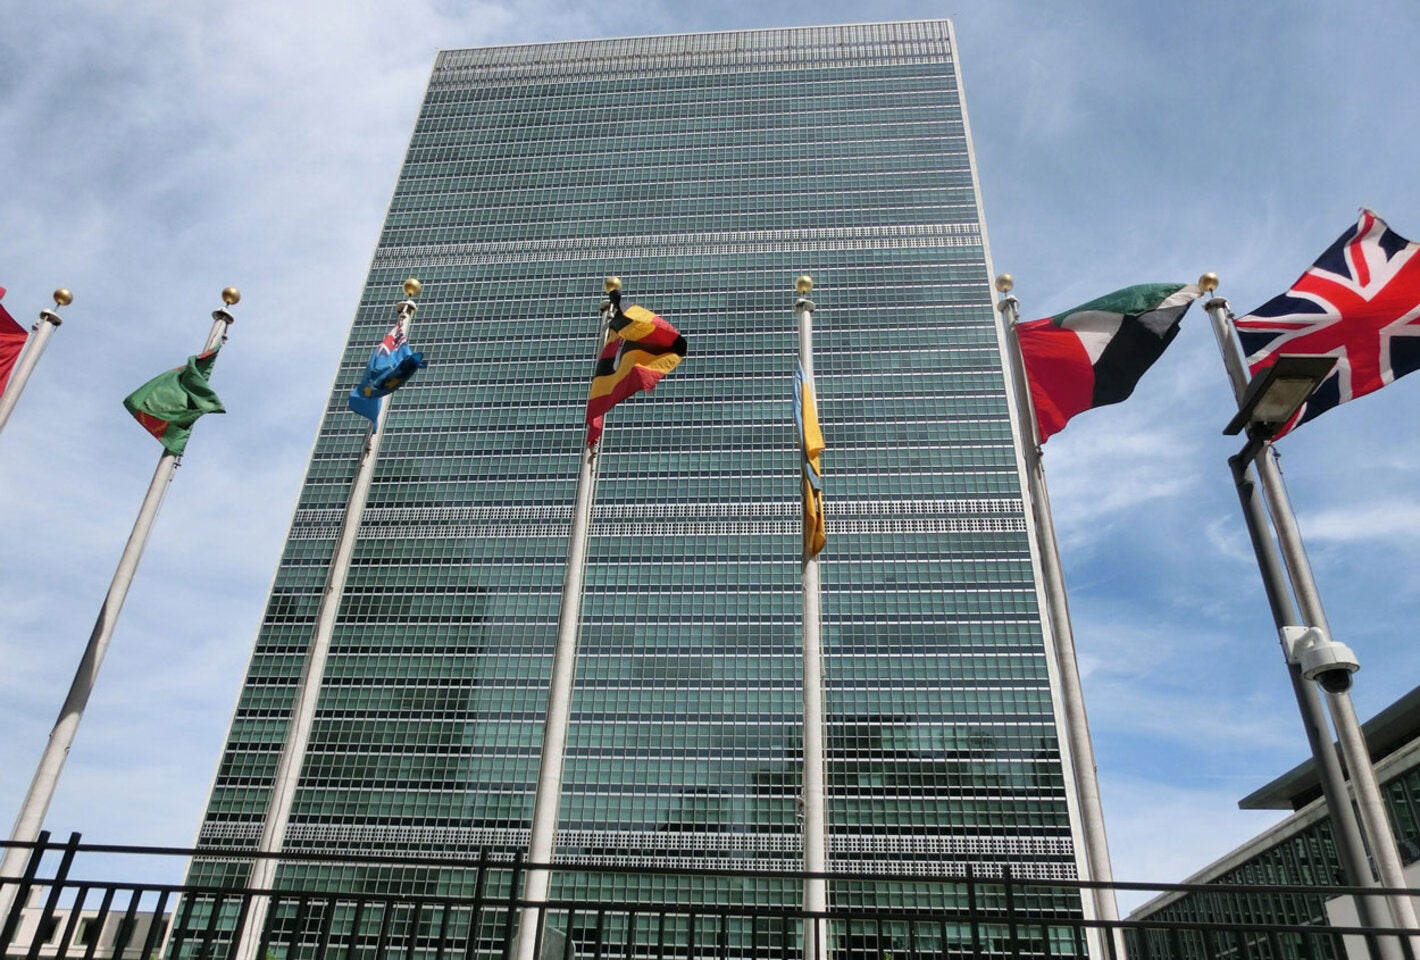 Edificio de las Naciones Unidas